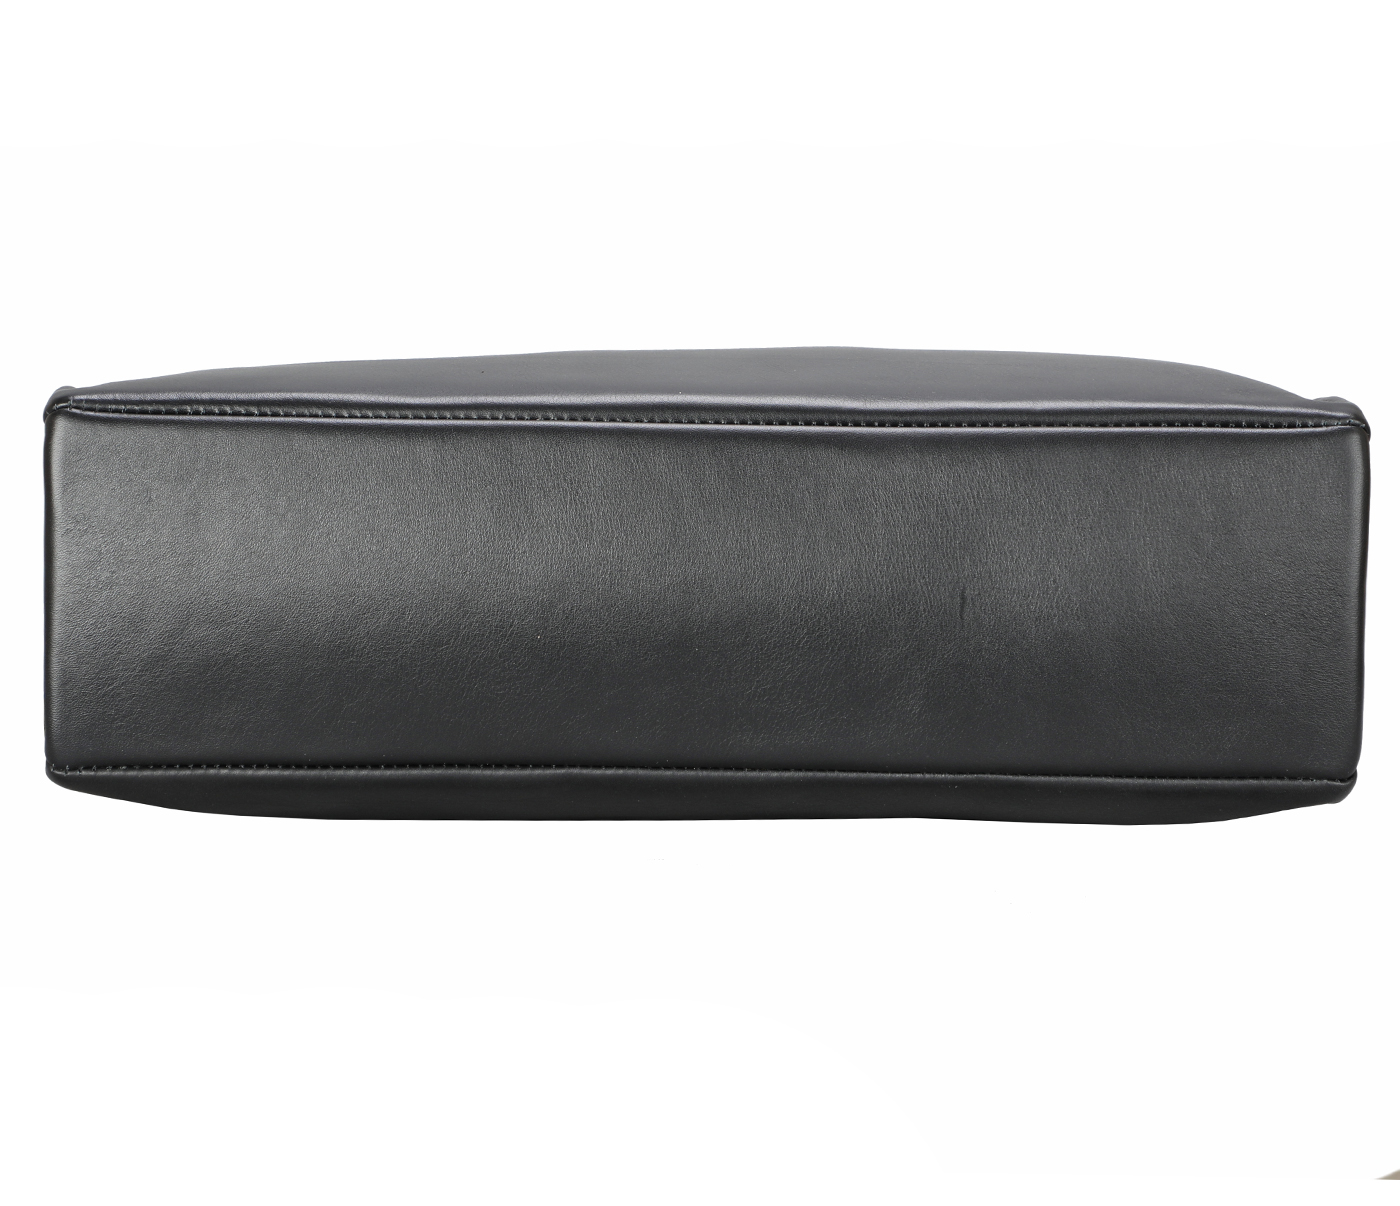 F76-Sergio-Laptop cum portfolio slim bag in Genuine Leather - blk